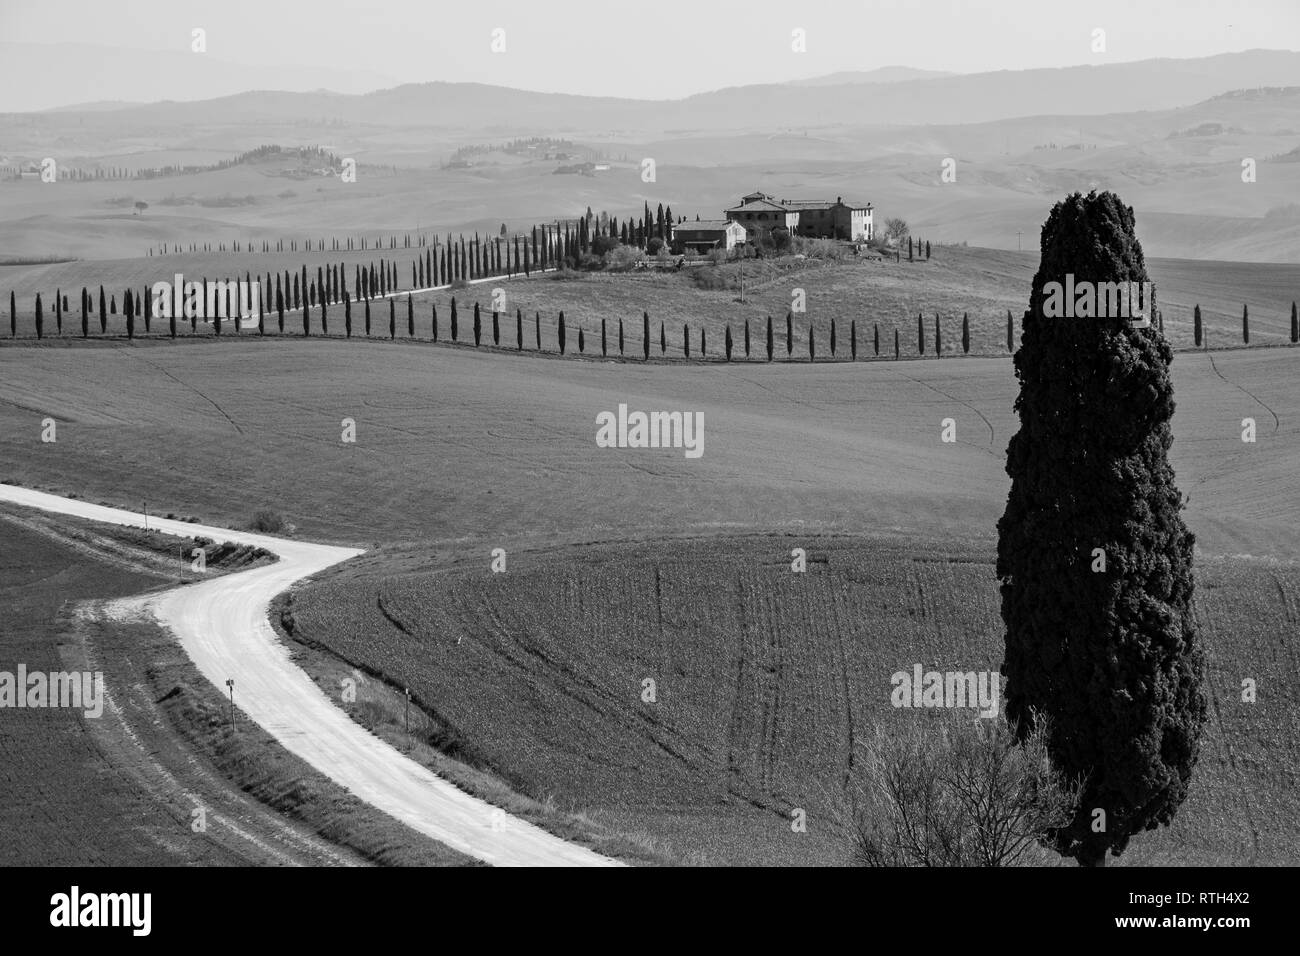 Cyprès solitaires le long d'un chemin de terre entre les collines de la campagne Toscane Banque D'Images